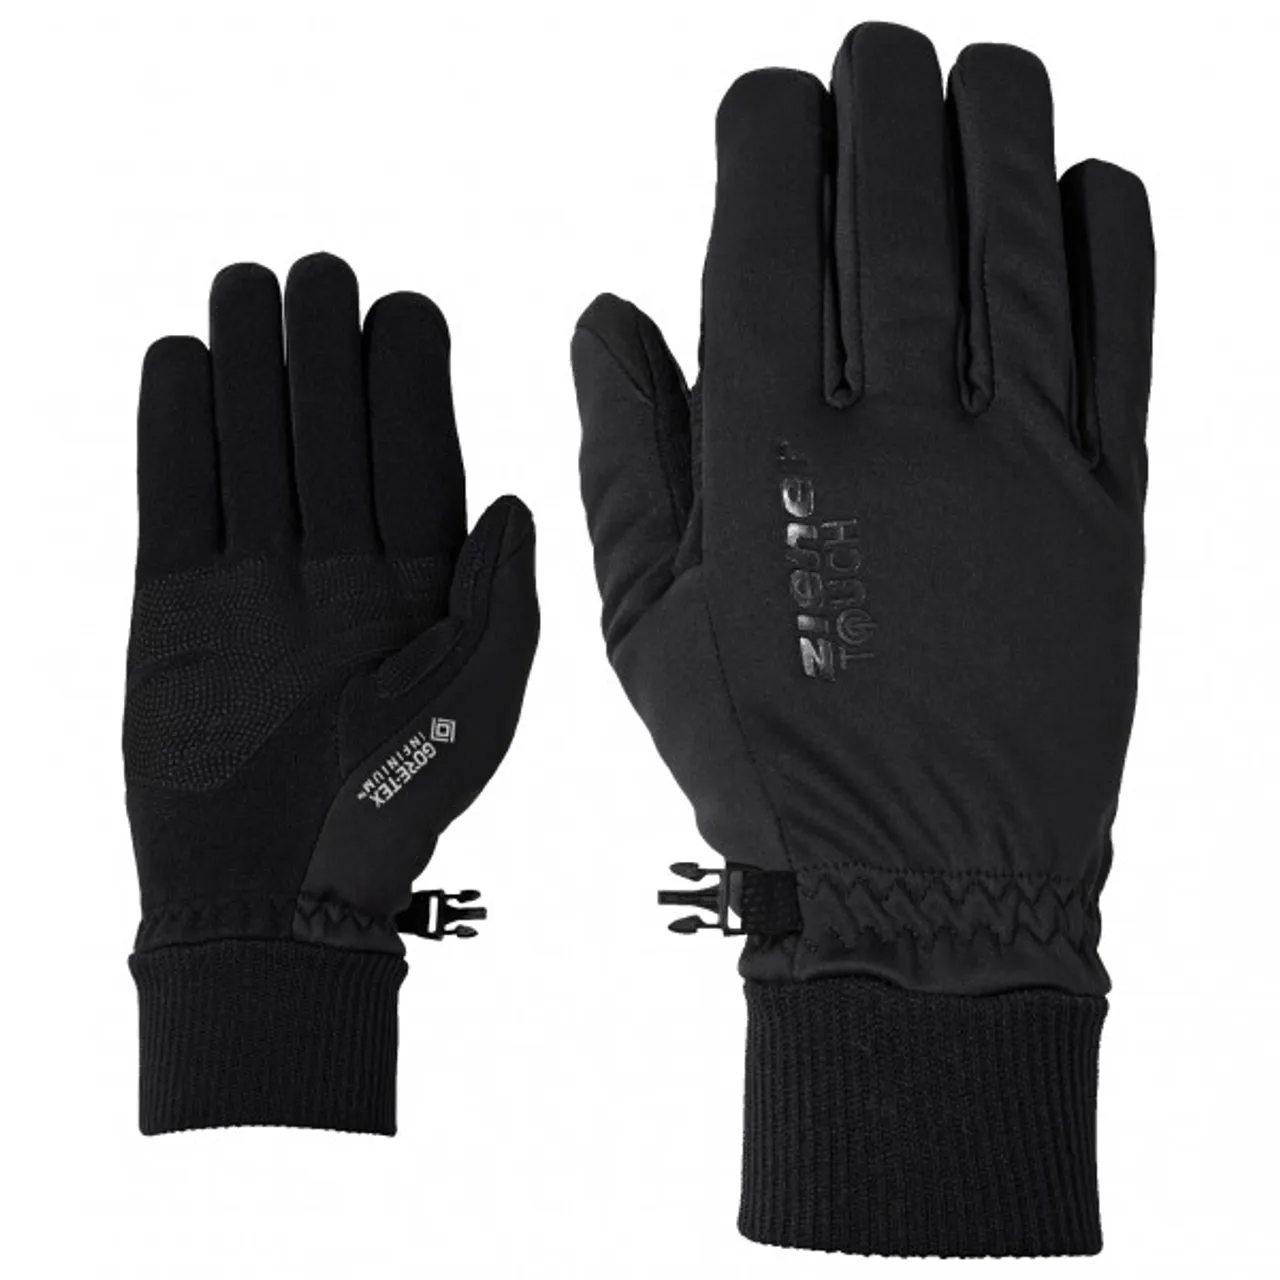 Ziener - Idaho GTX Inf Touch Glove Multisport - Handschuhe Gr 6 schwarz